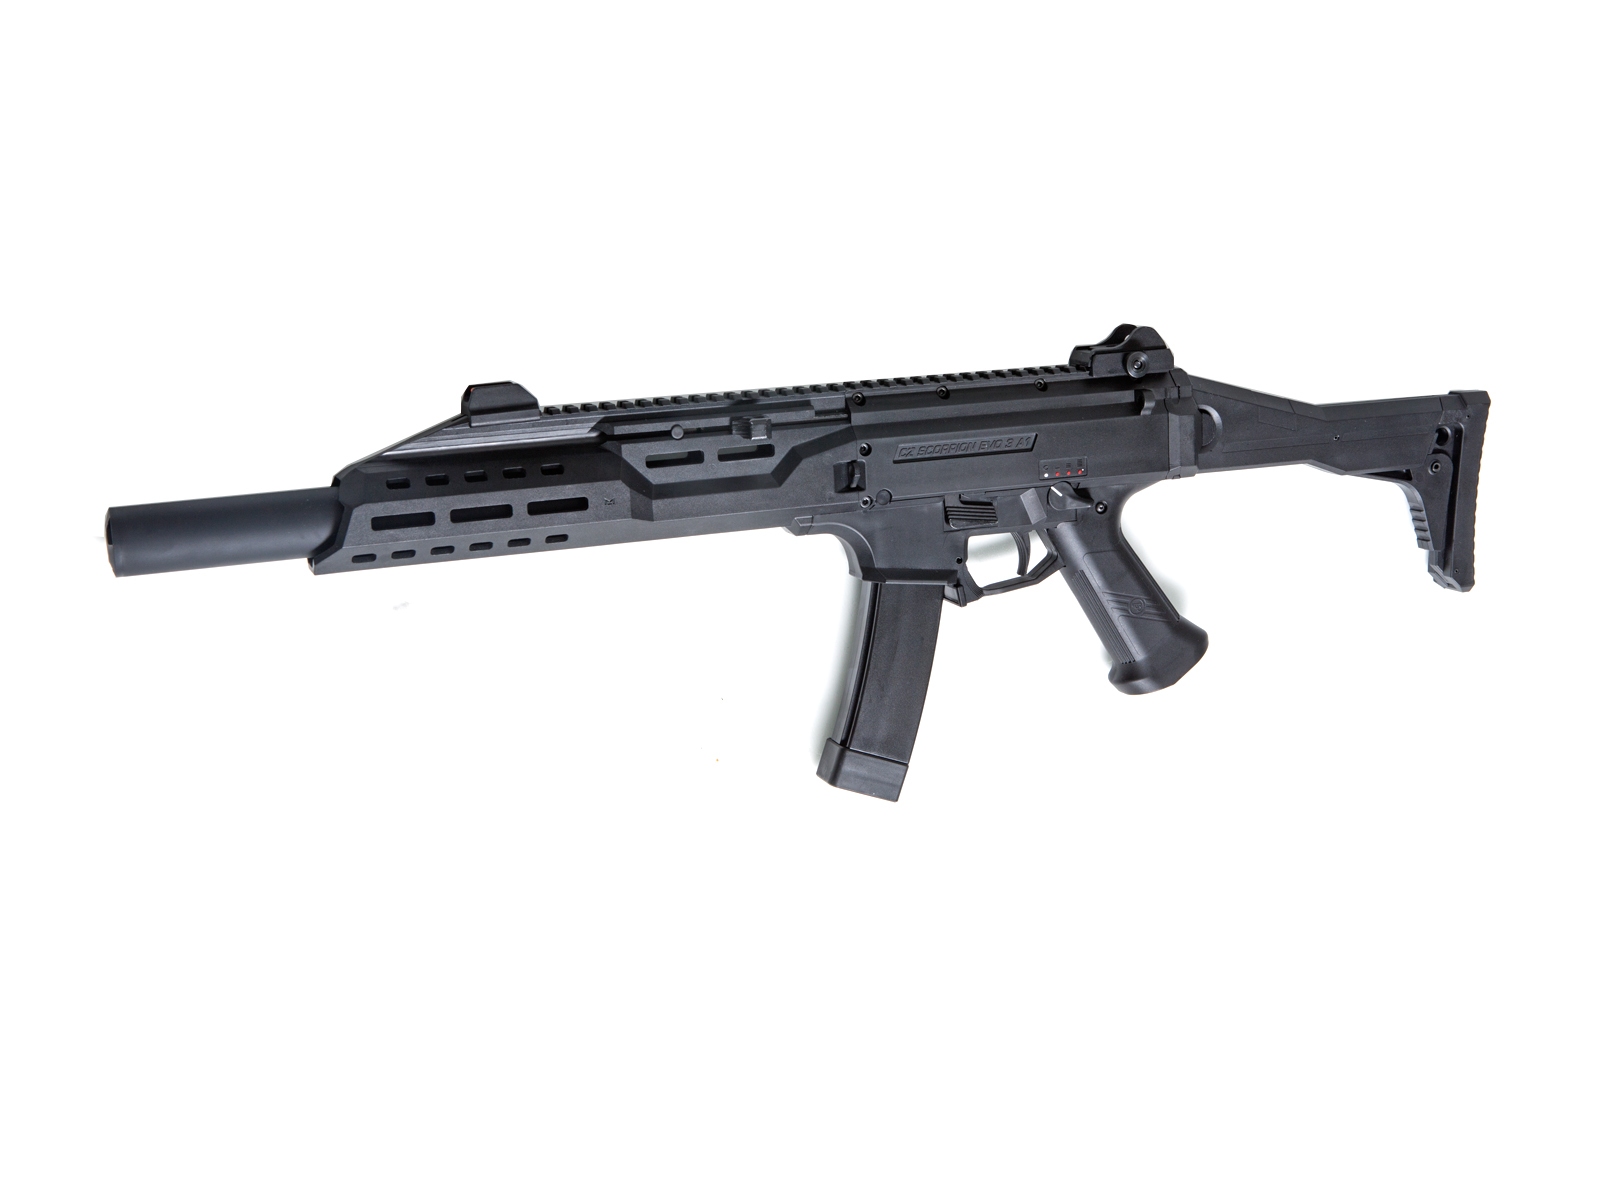 ASG CZ Scorpion EVO 3 A1 B.E.T. Carbine